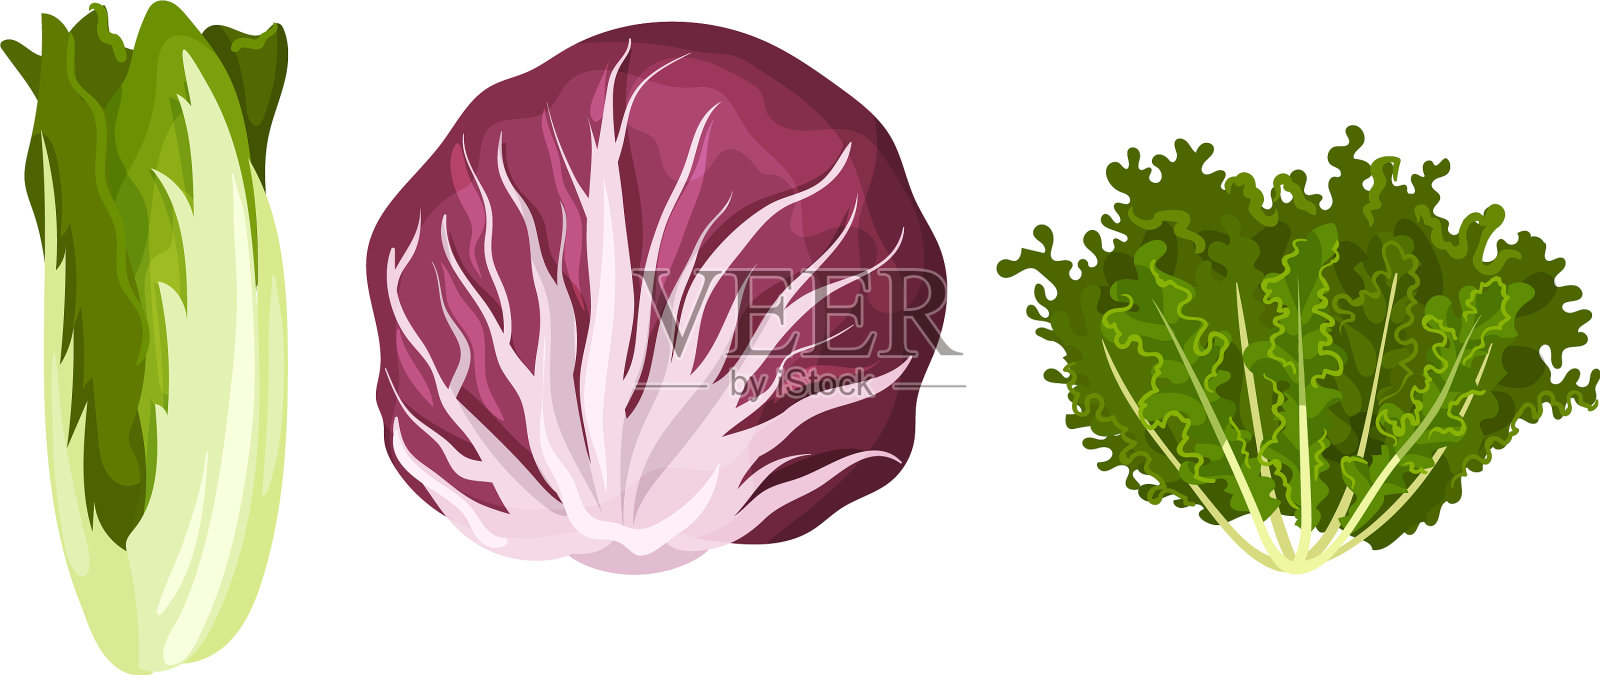 叶类蔬菜或沙拉蔬菜可食用设计元素图片